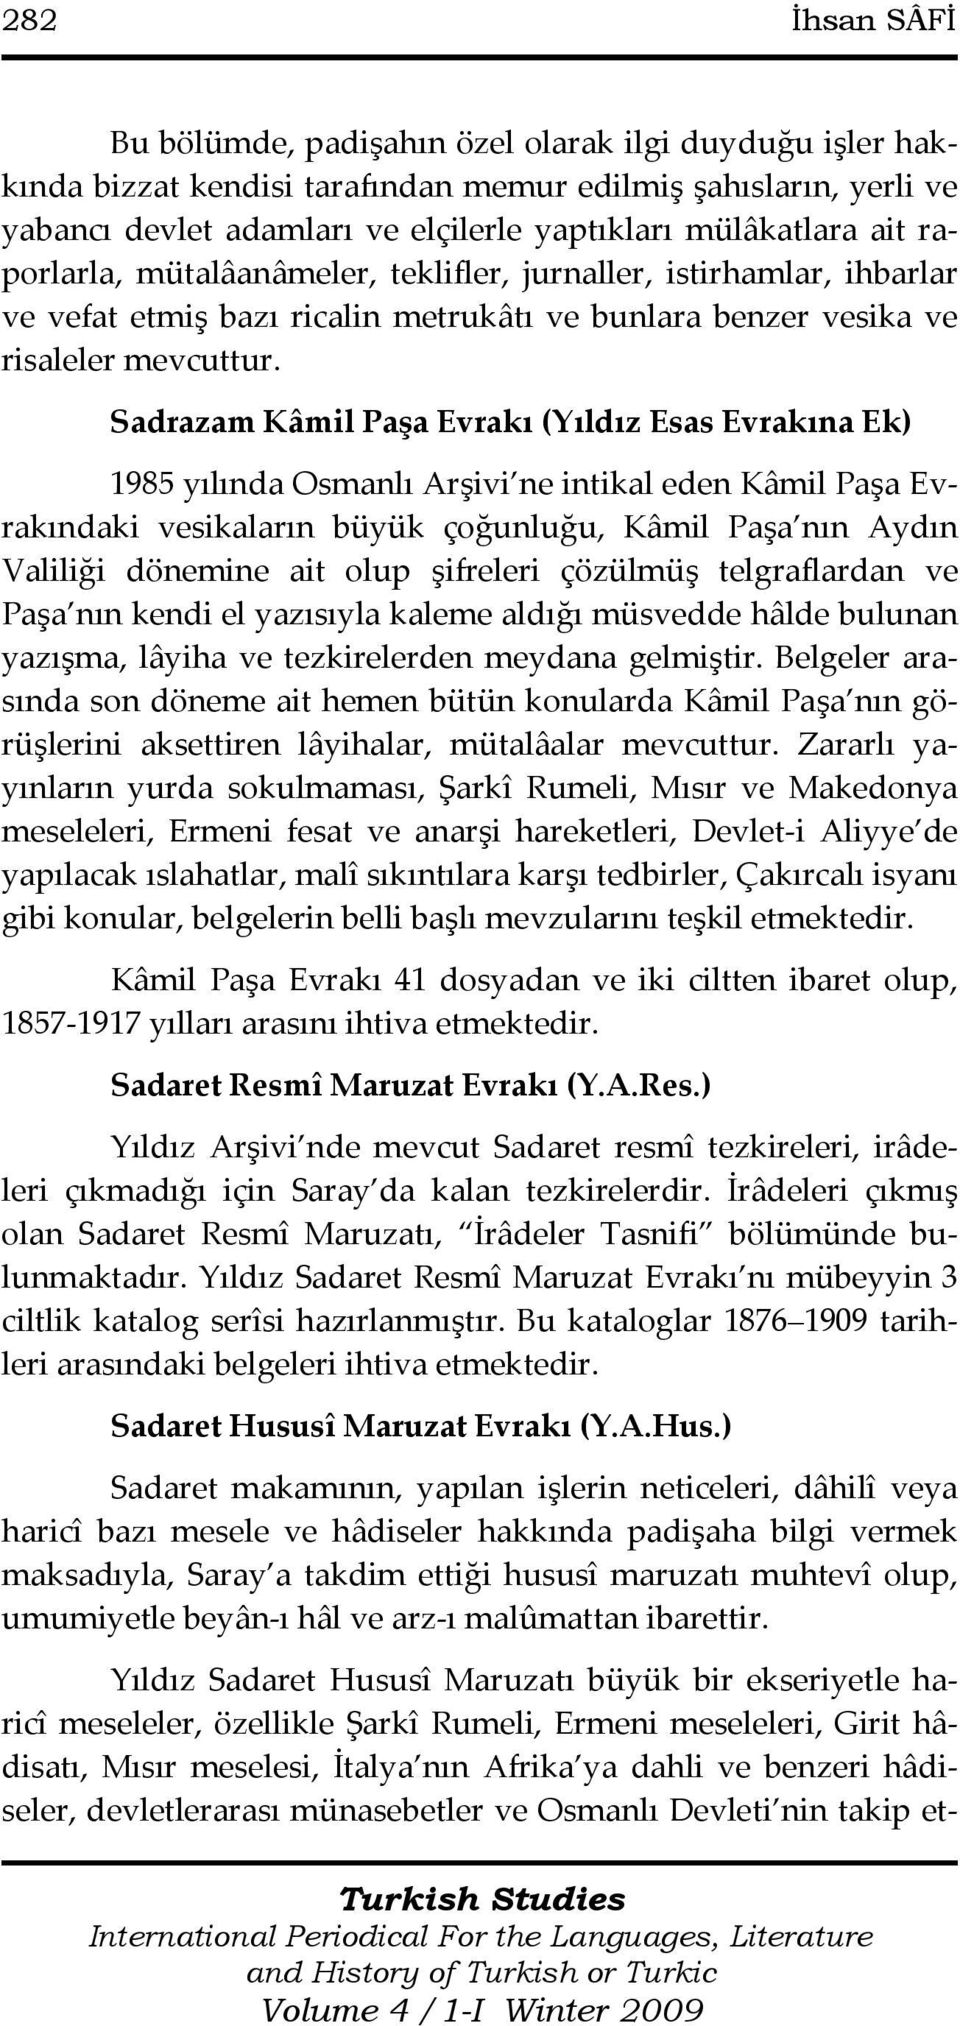 Sadrazam Kâmil Paşa Evrakı (Yıldız Esas Evrakına Ek) 1985 yılında Osmanlı Arşivi ne intikal eden Kâmil Paşa Evrakındaki vesikaların büyük çoğunluğu, Kâmil Paşa nın Aydın Valiliği dönemine ait olup